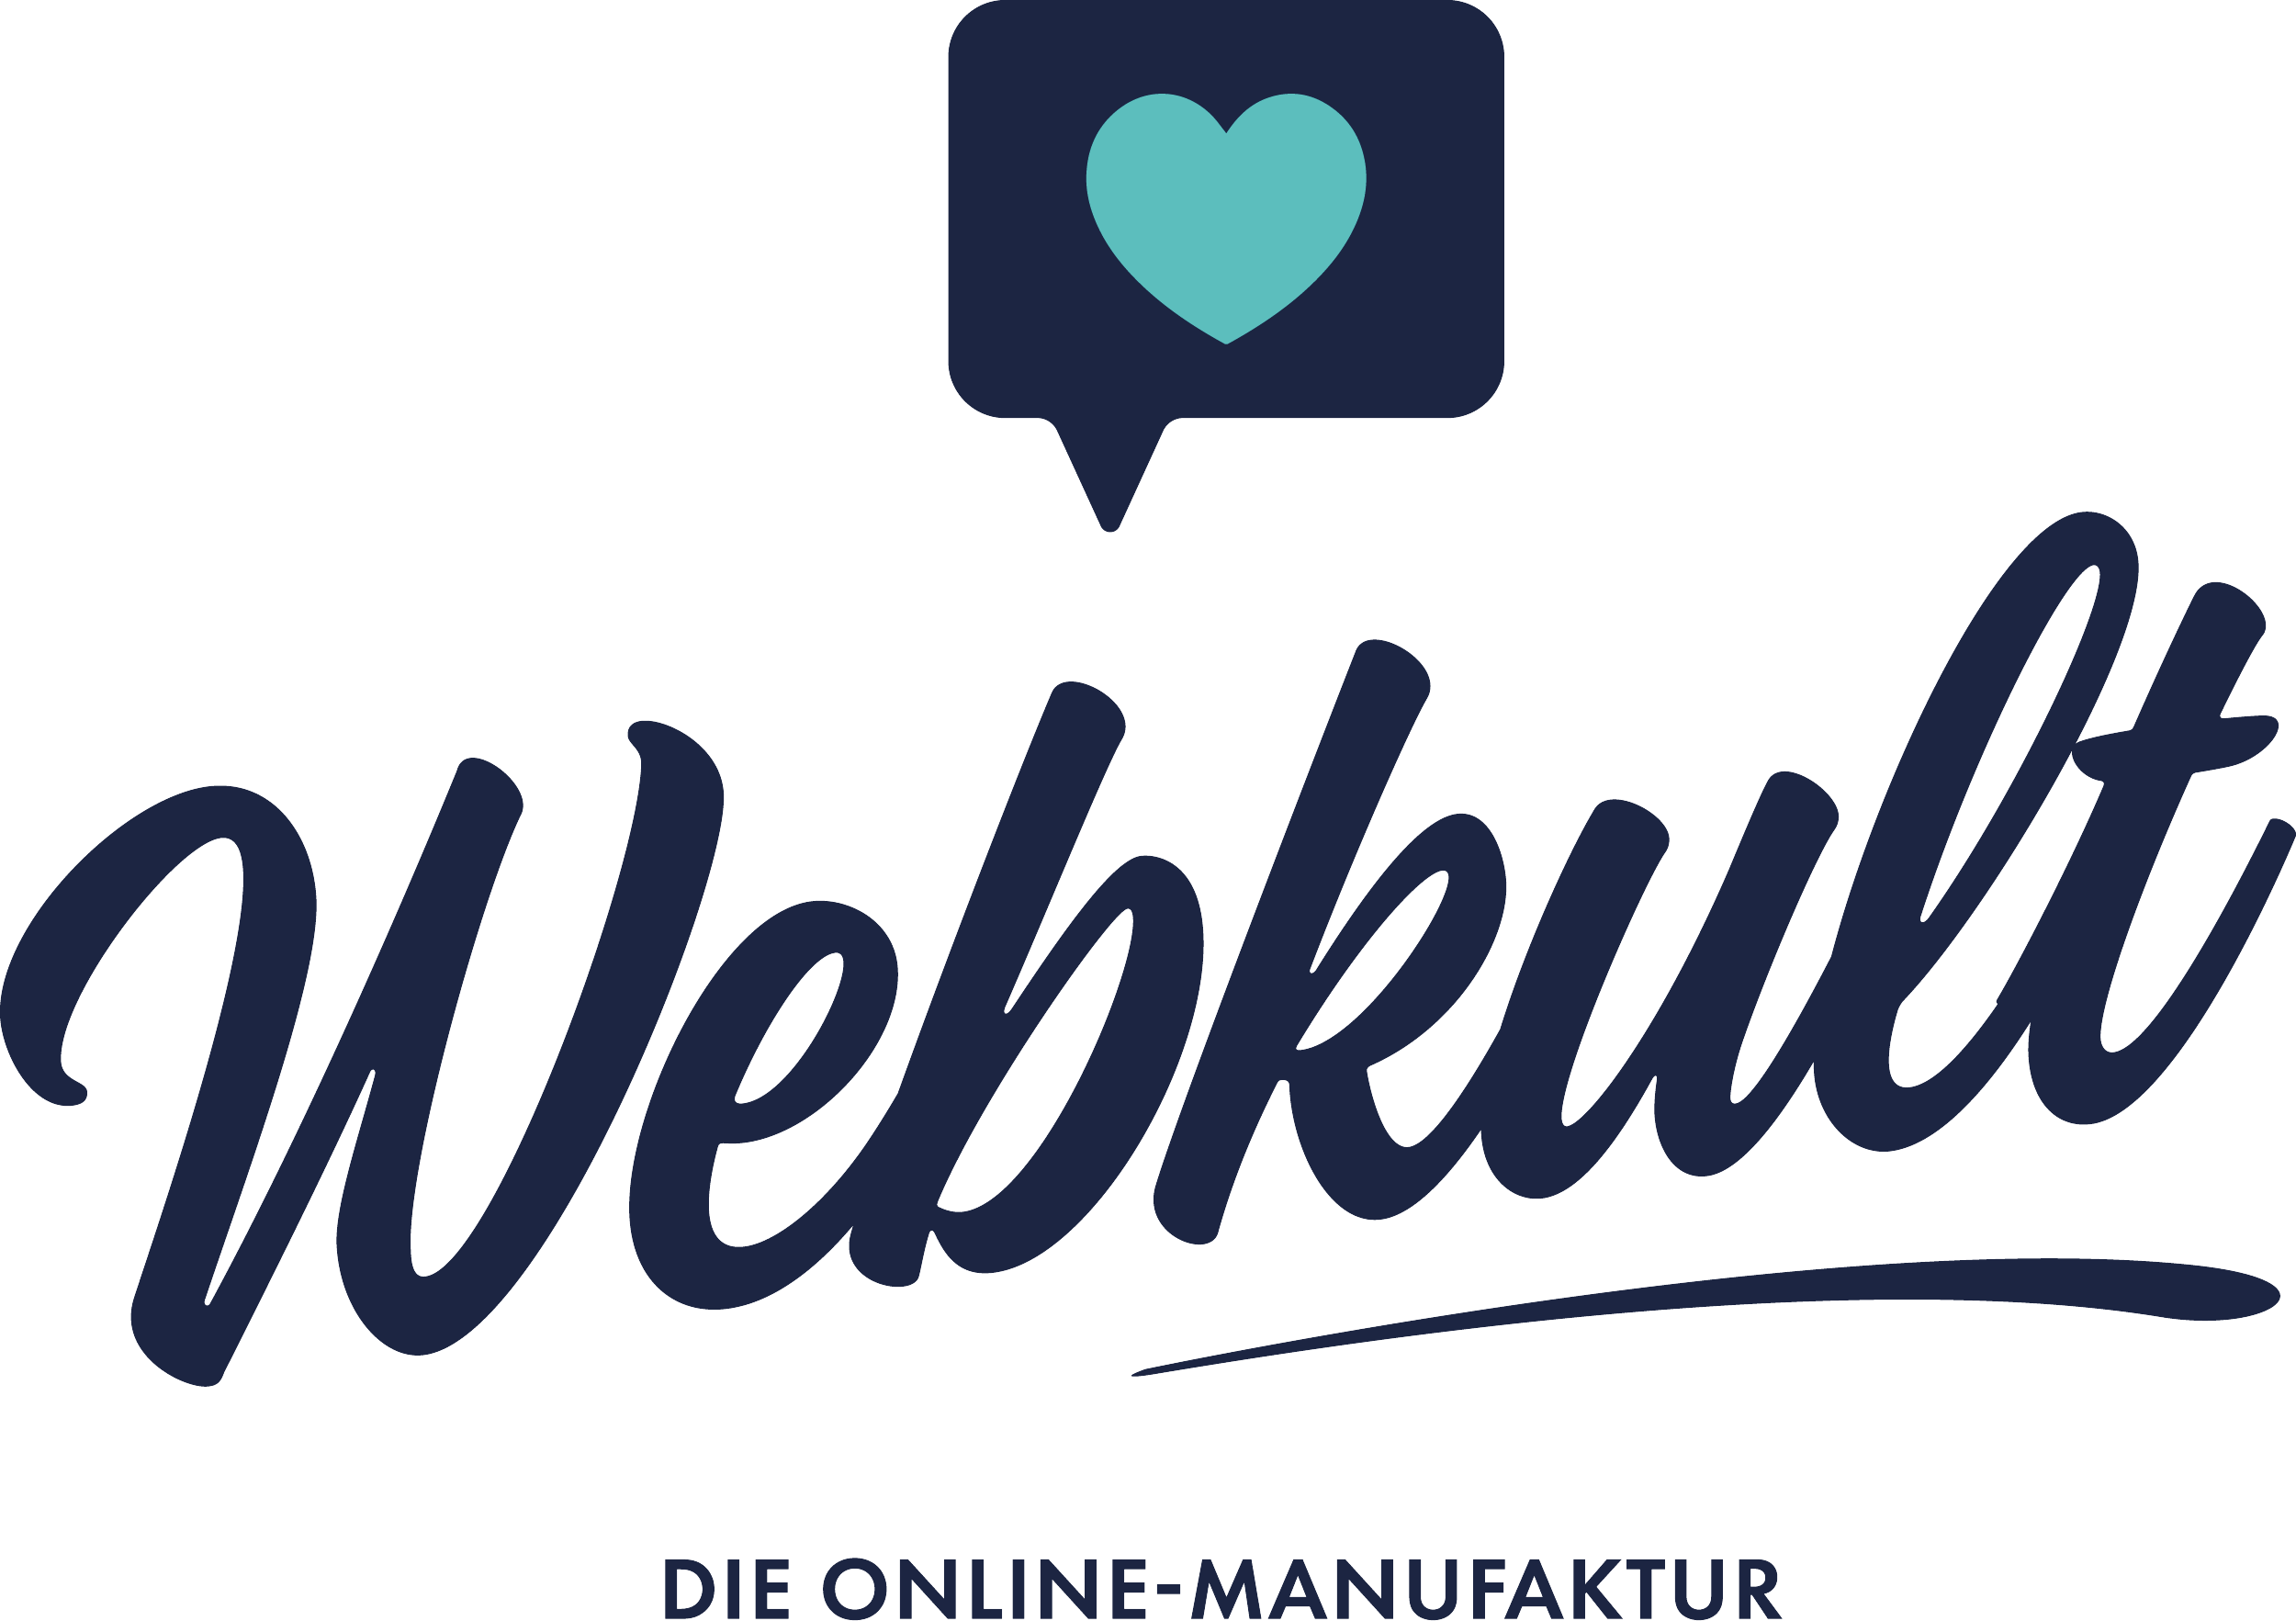 Webkult - Die Online Manufaktur Logo